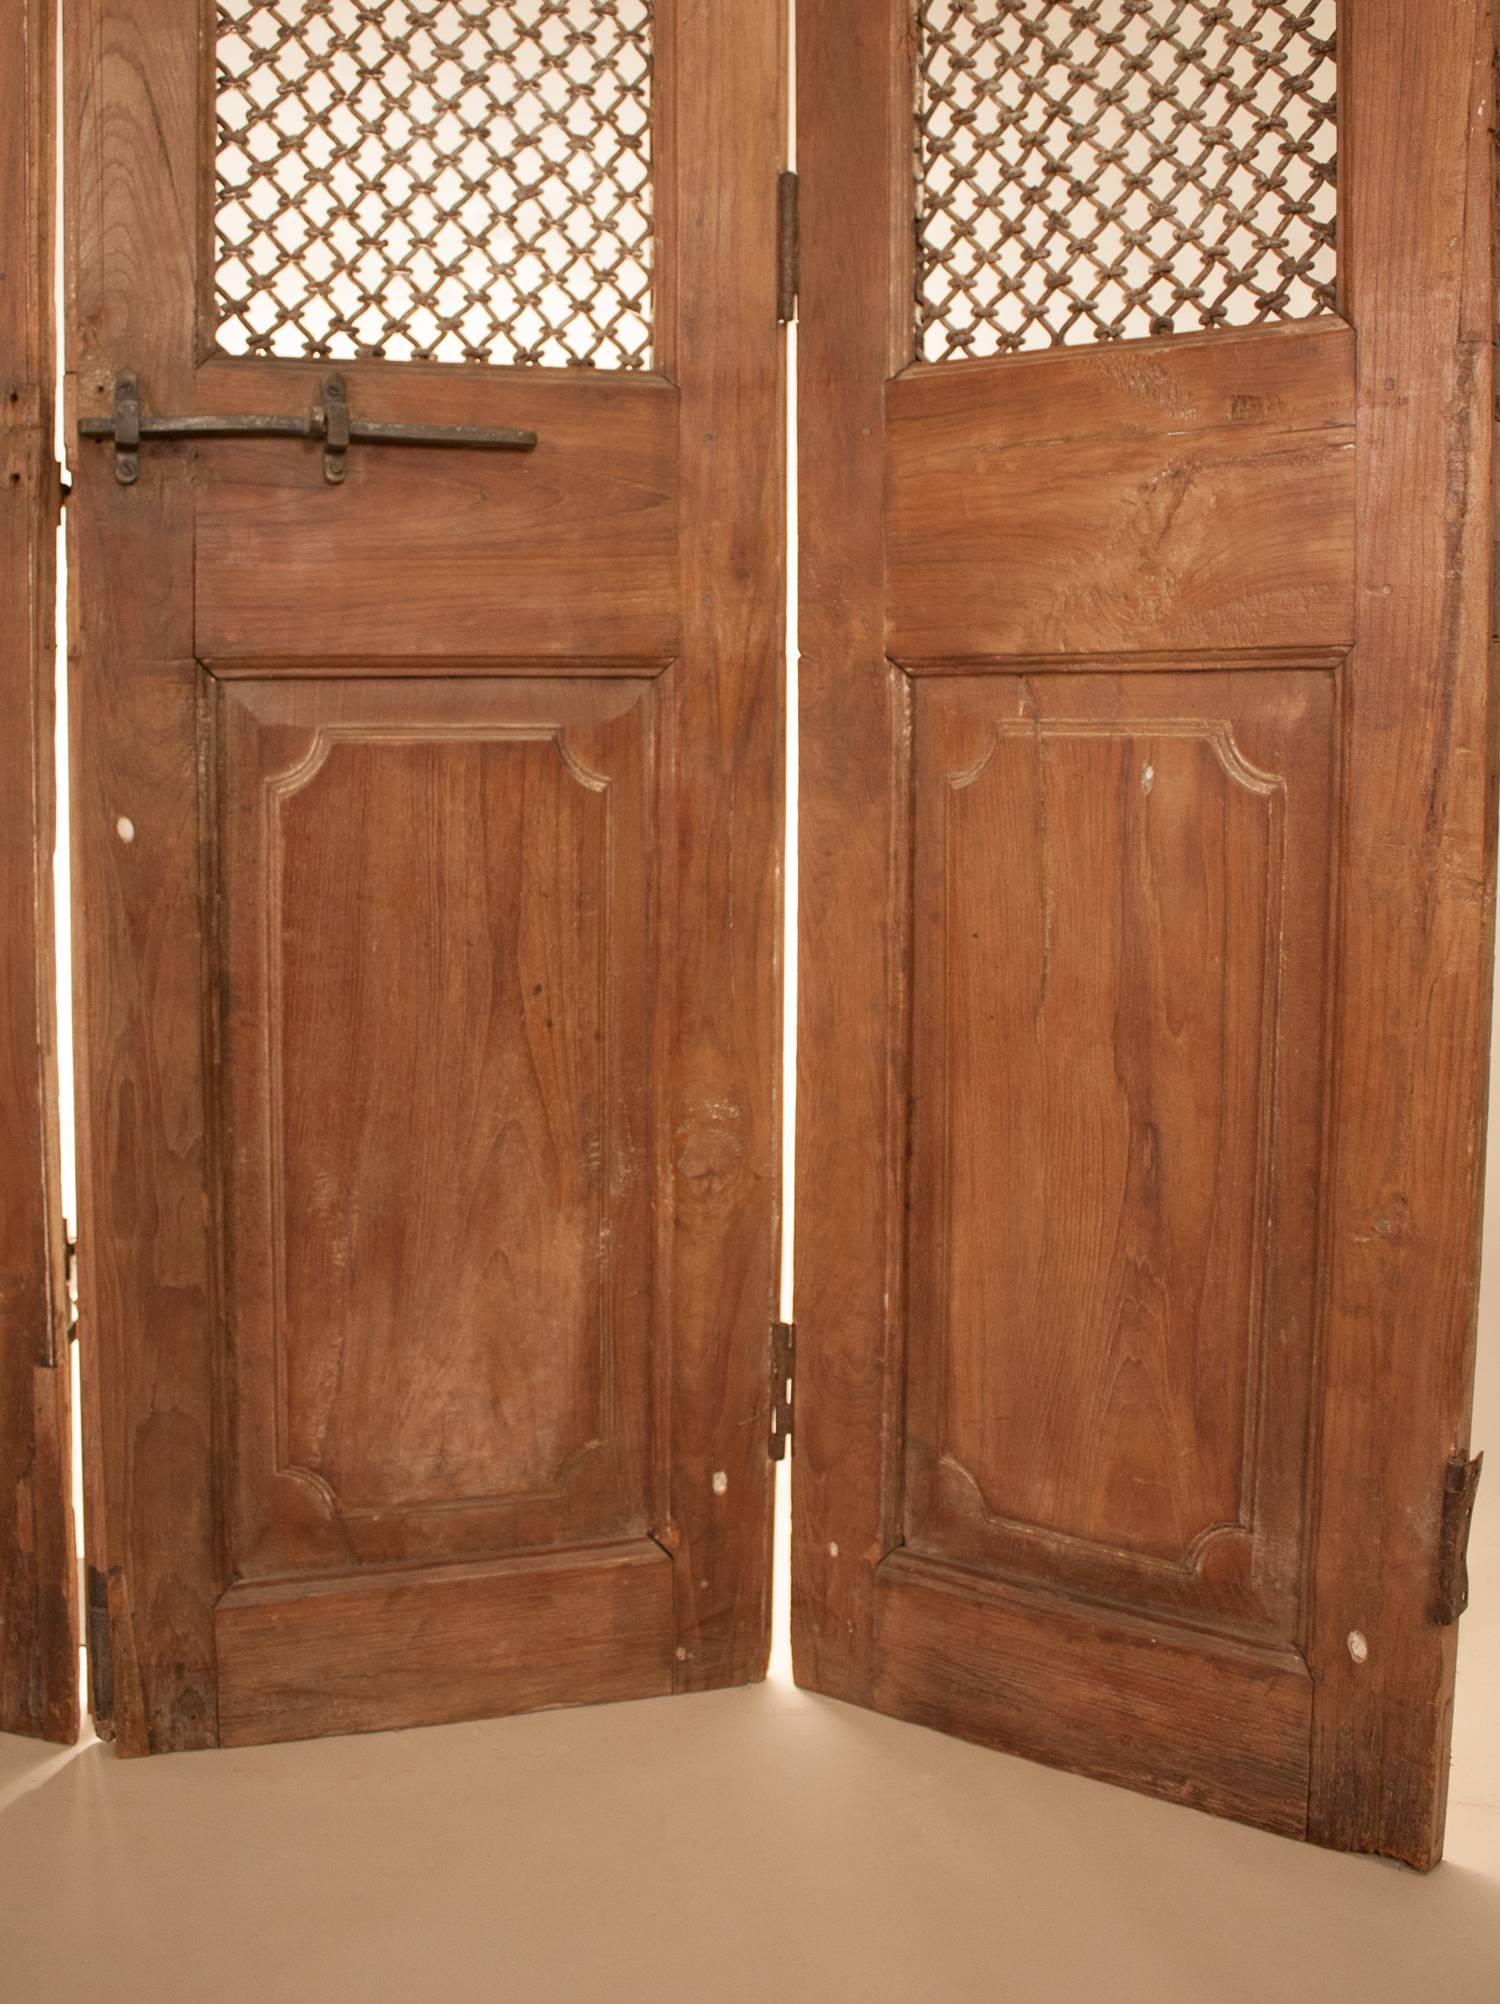 Indian Set of Teak Wood and Iron Doors 